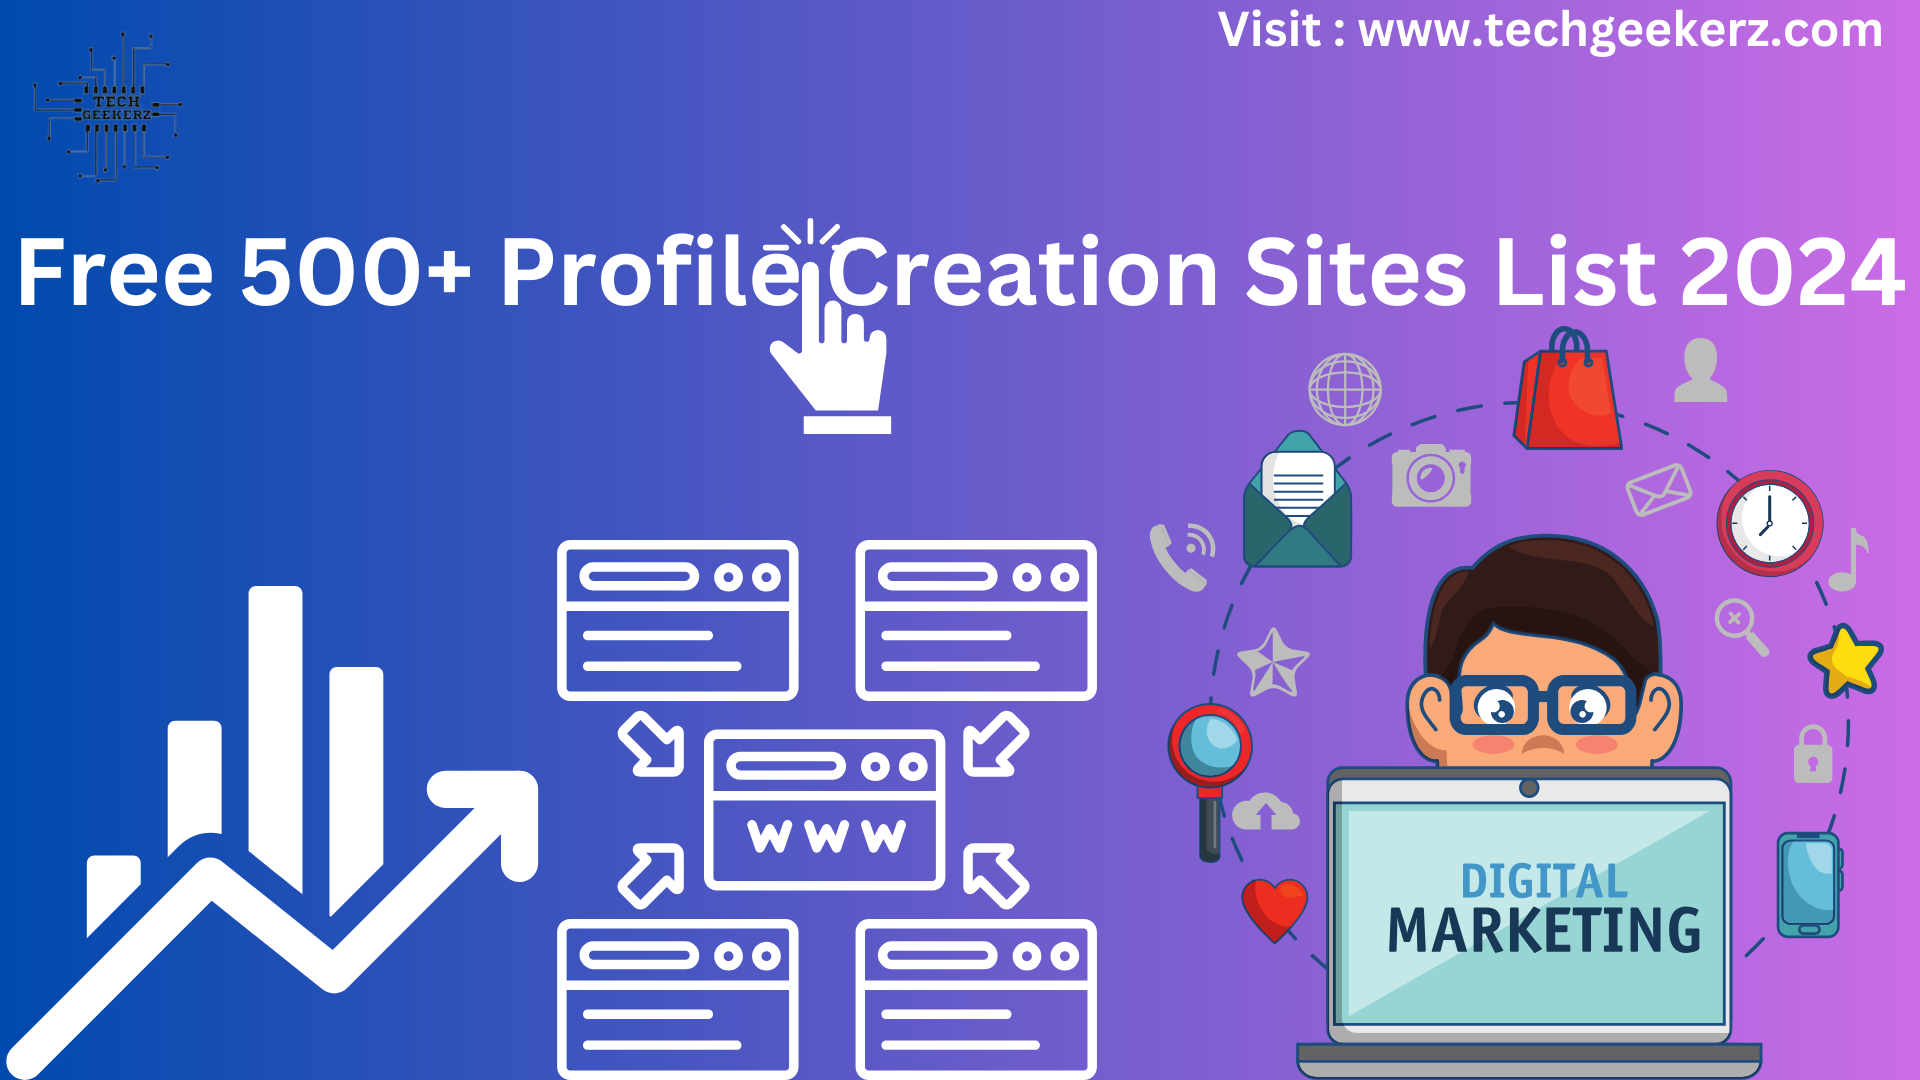 Profile Creation Sites List 2024